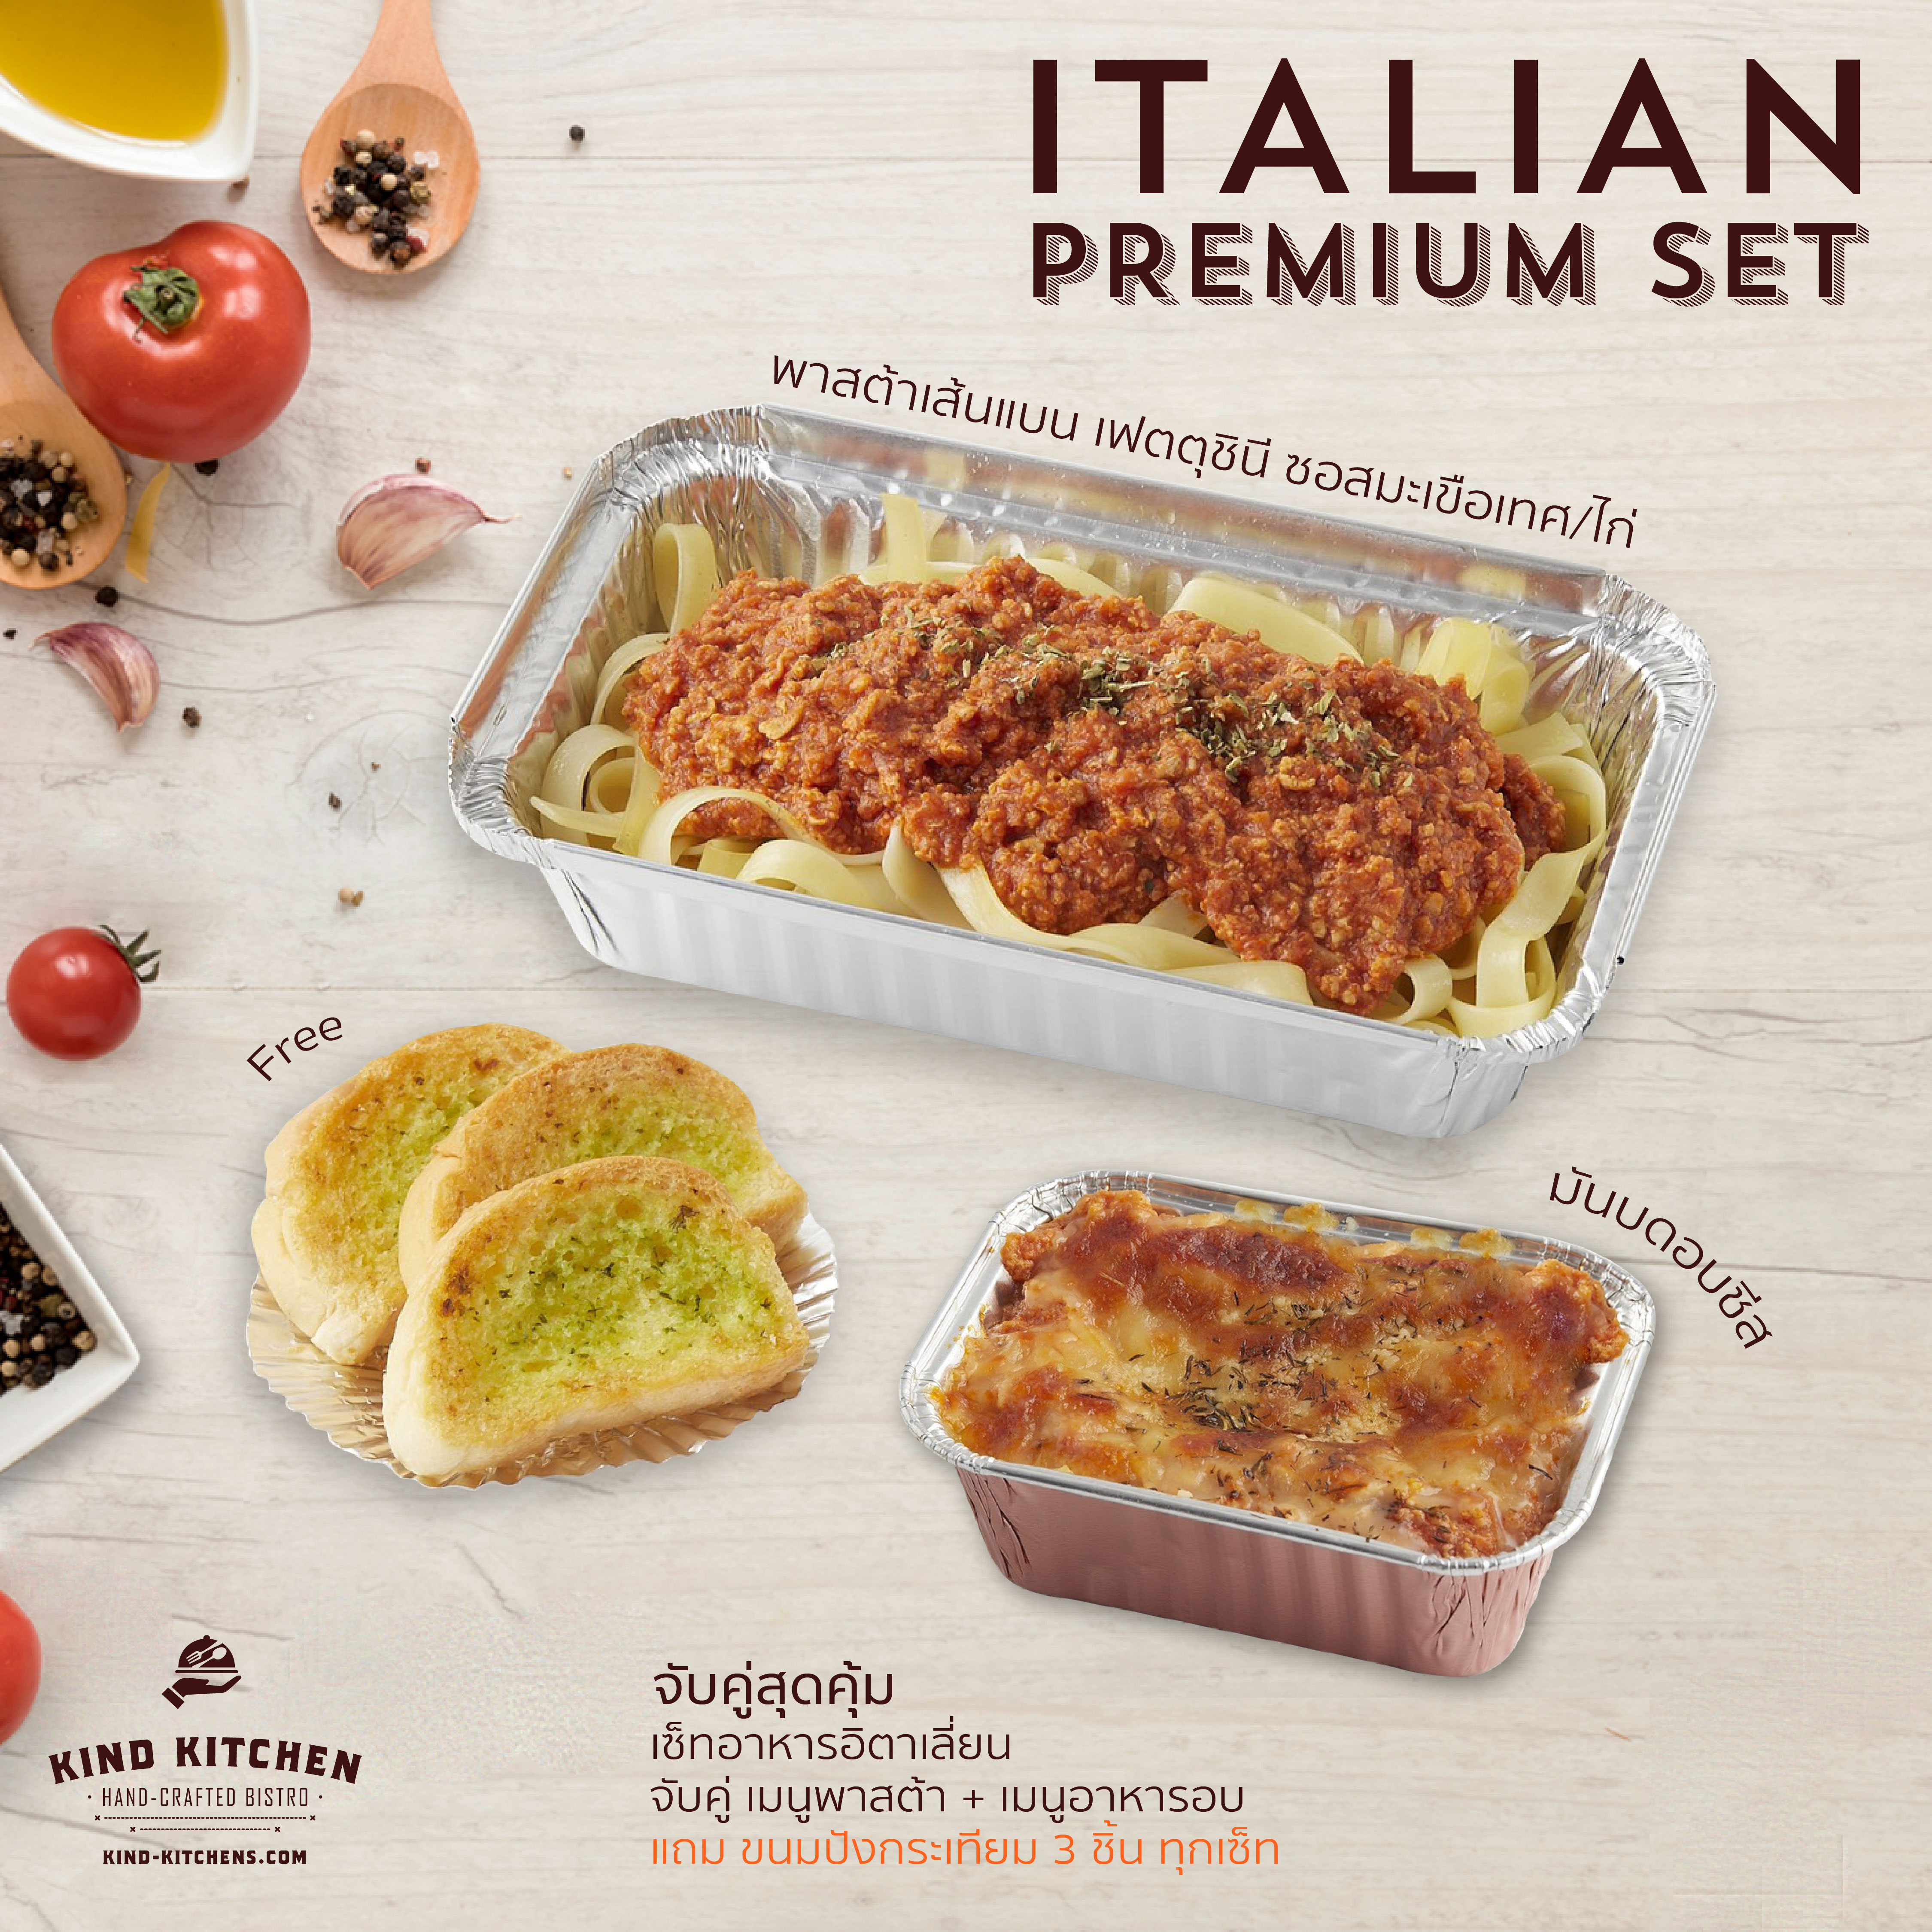 เซ็ทอาหารอิตาเลี่ยน Italian Premium Set_พาสต้าเส้นแบน เฟตตุชินี ซอสมะเขือเทศ/ไก่ + มันบดอบชีส